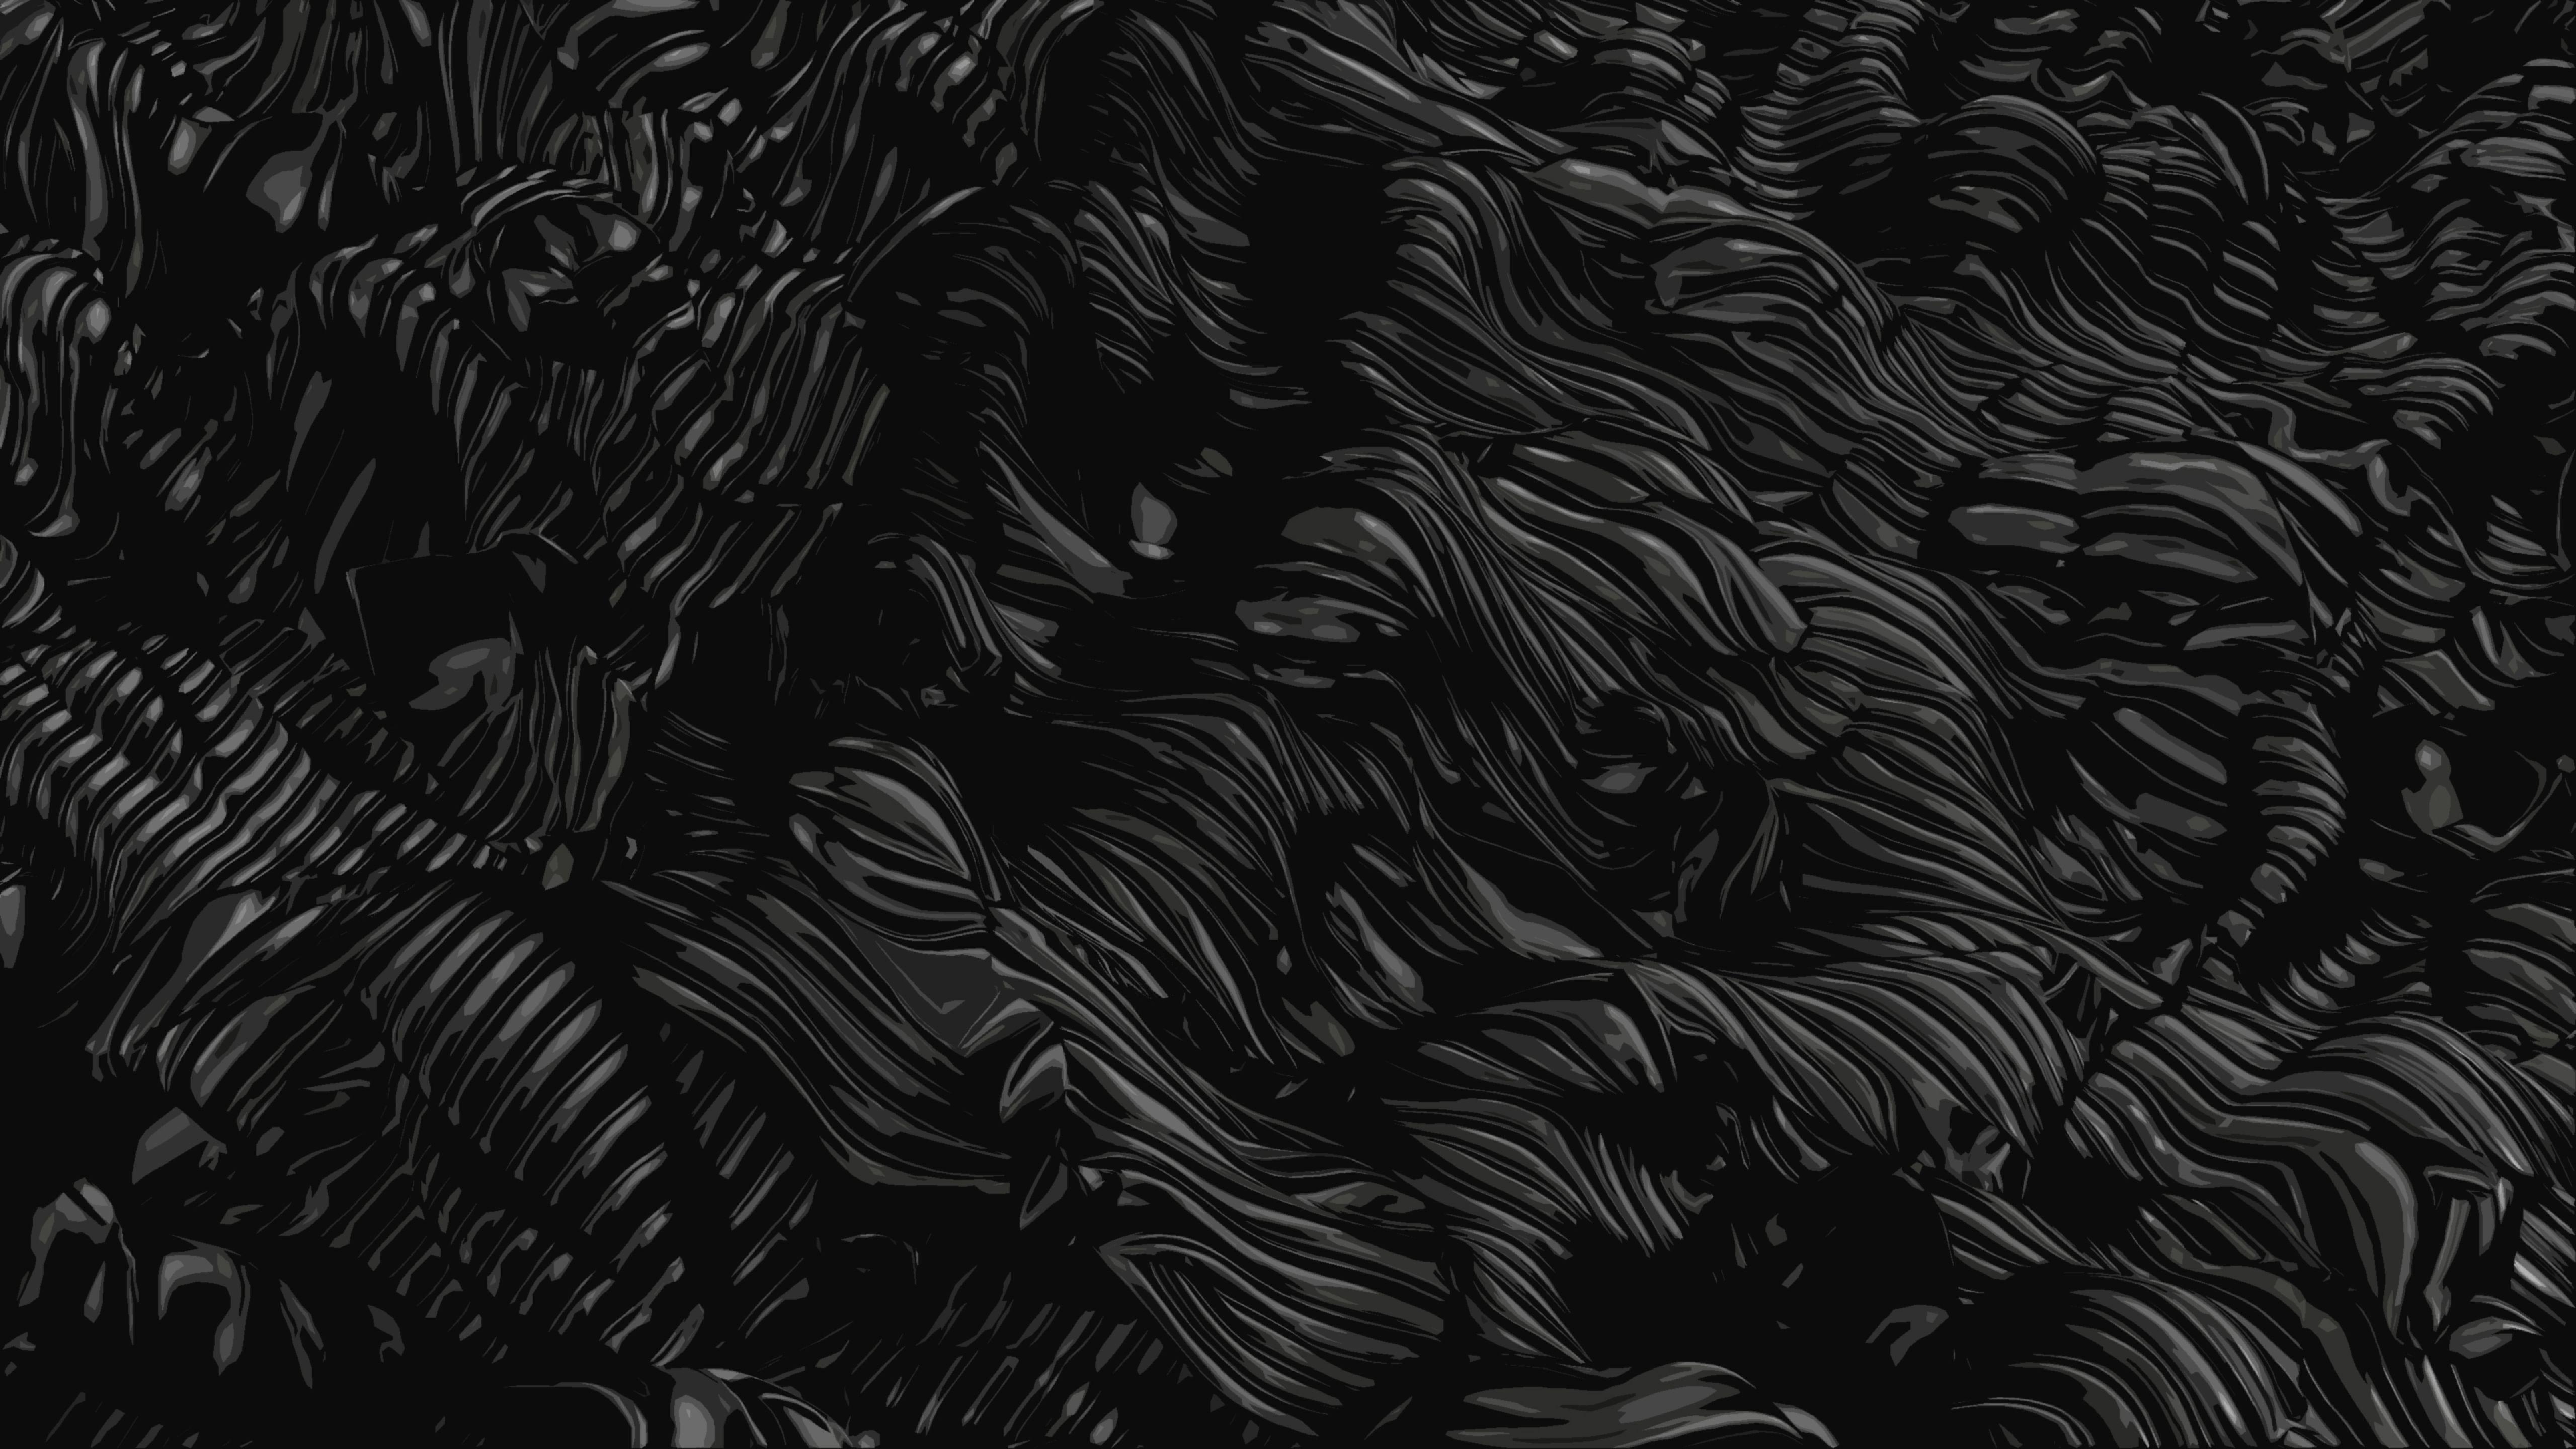 Bạn là một người yêu thích những hình nền đen đẹp và chất lượng? Hãy xem ngay các hình nền đen 5k tuyệt đẹp mà chúng tôi sưu tập được! Với độ phân giải cao và đường nét tinh tế, chắc chắn bạn sẽ không thể rời mắt khỏi những hình nền tuyệt vời này.